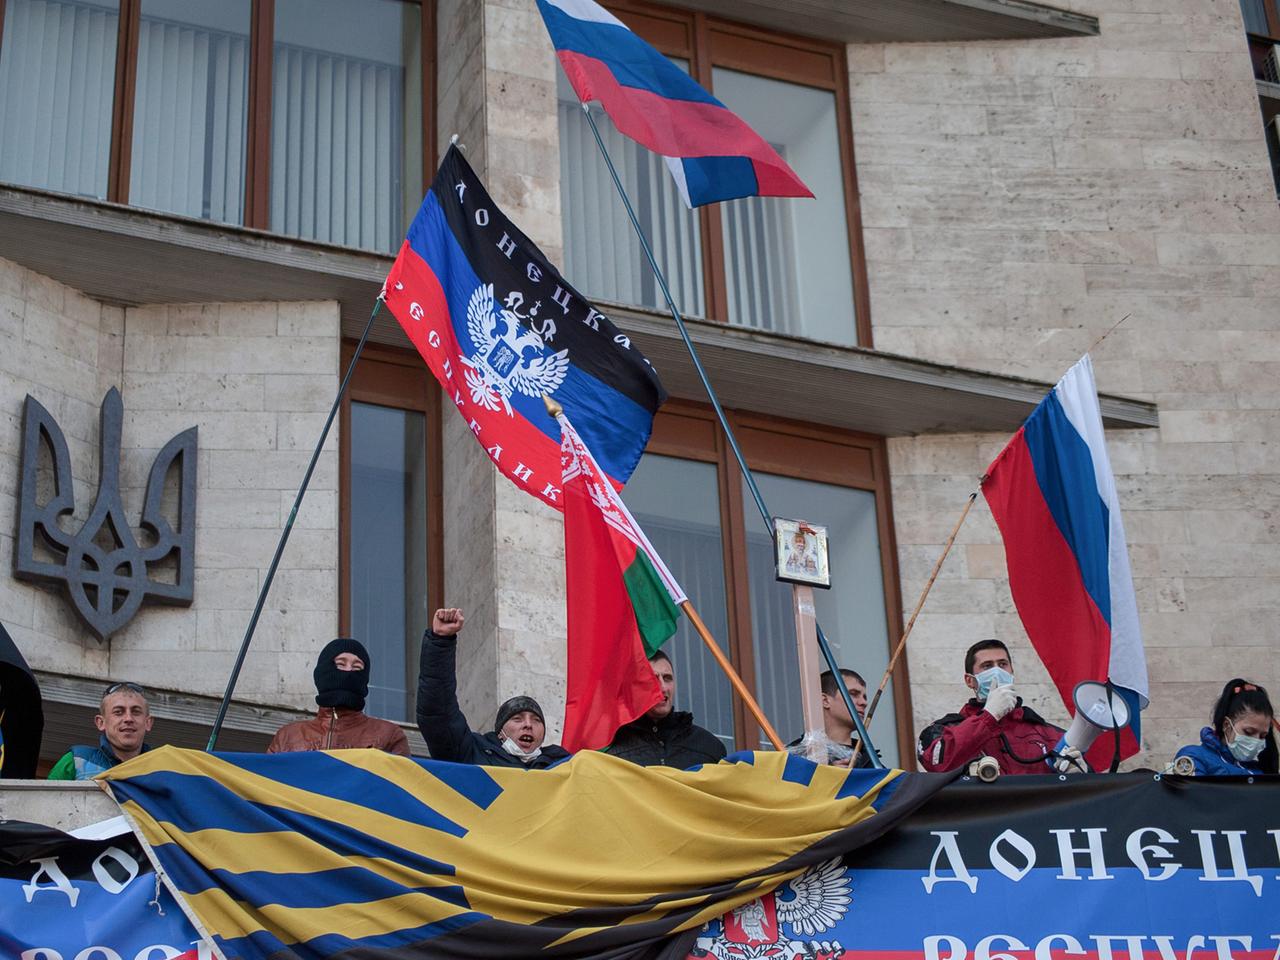 Vor einem Verwaltungsgebäude sind teils vermummte Demonstranten zu sehen, die die russische Flagge schwenken und skandieren.